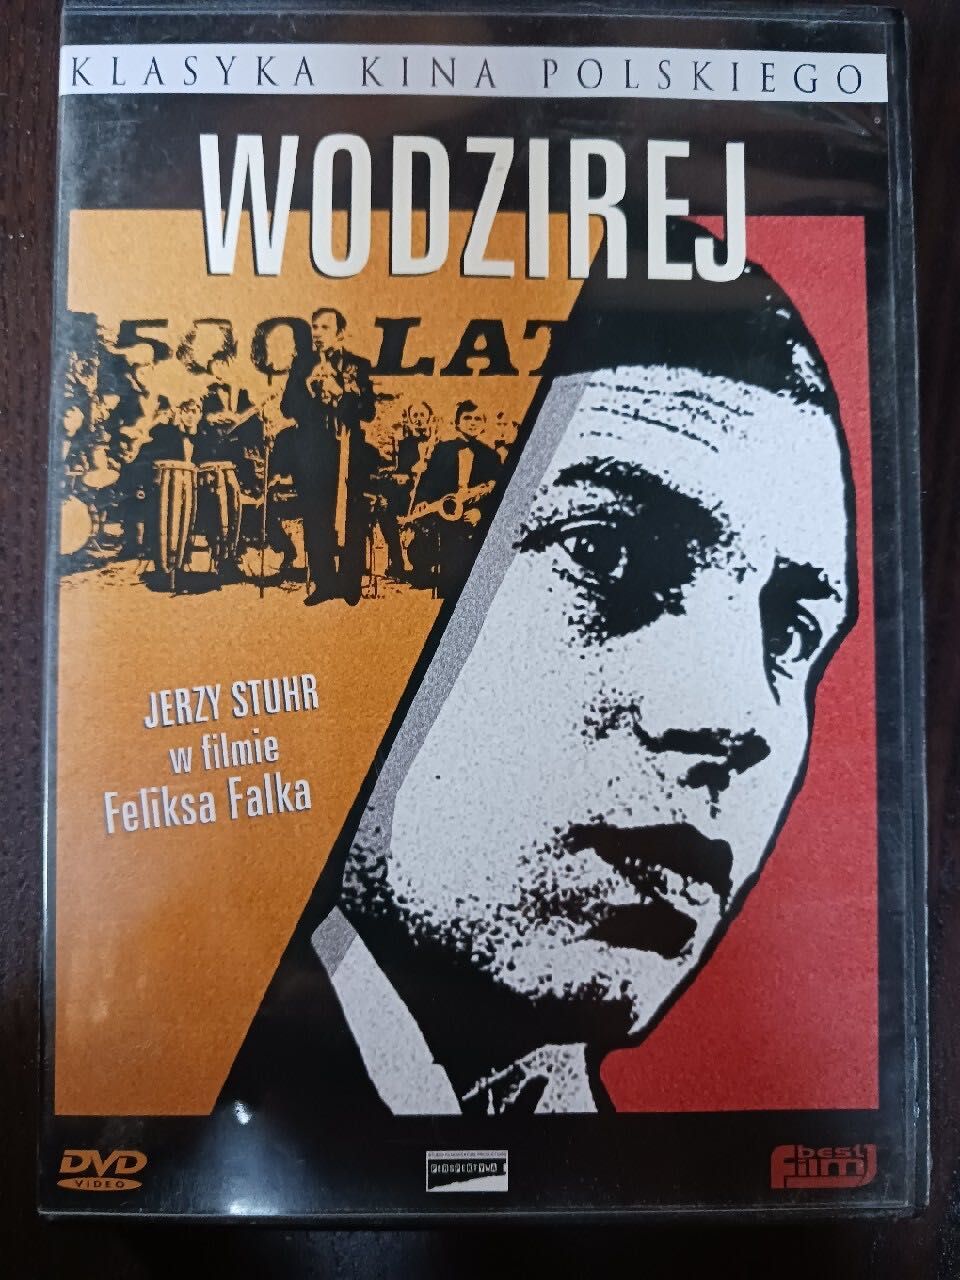 WODZIREJ (Feliks Falk, Jerzy Stuhr) dvd